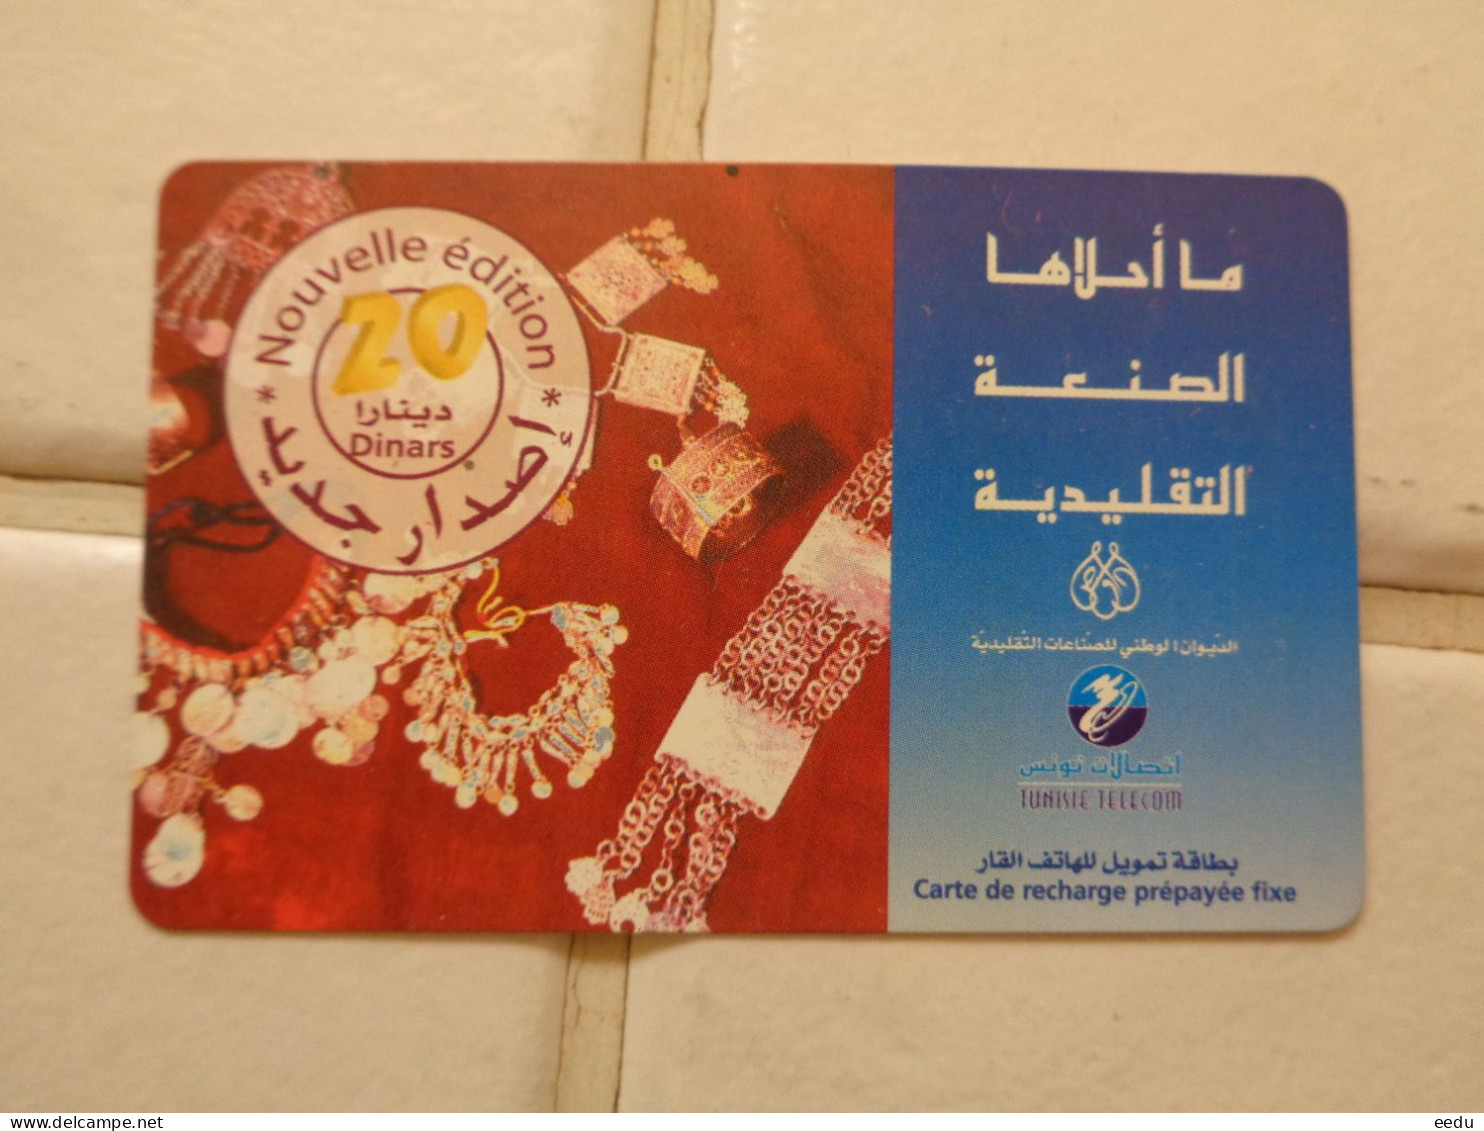 Tunisia Phonecard - Tunisie